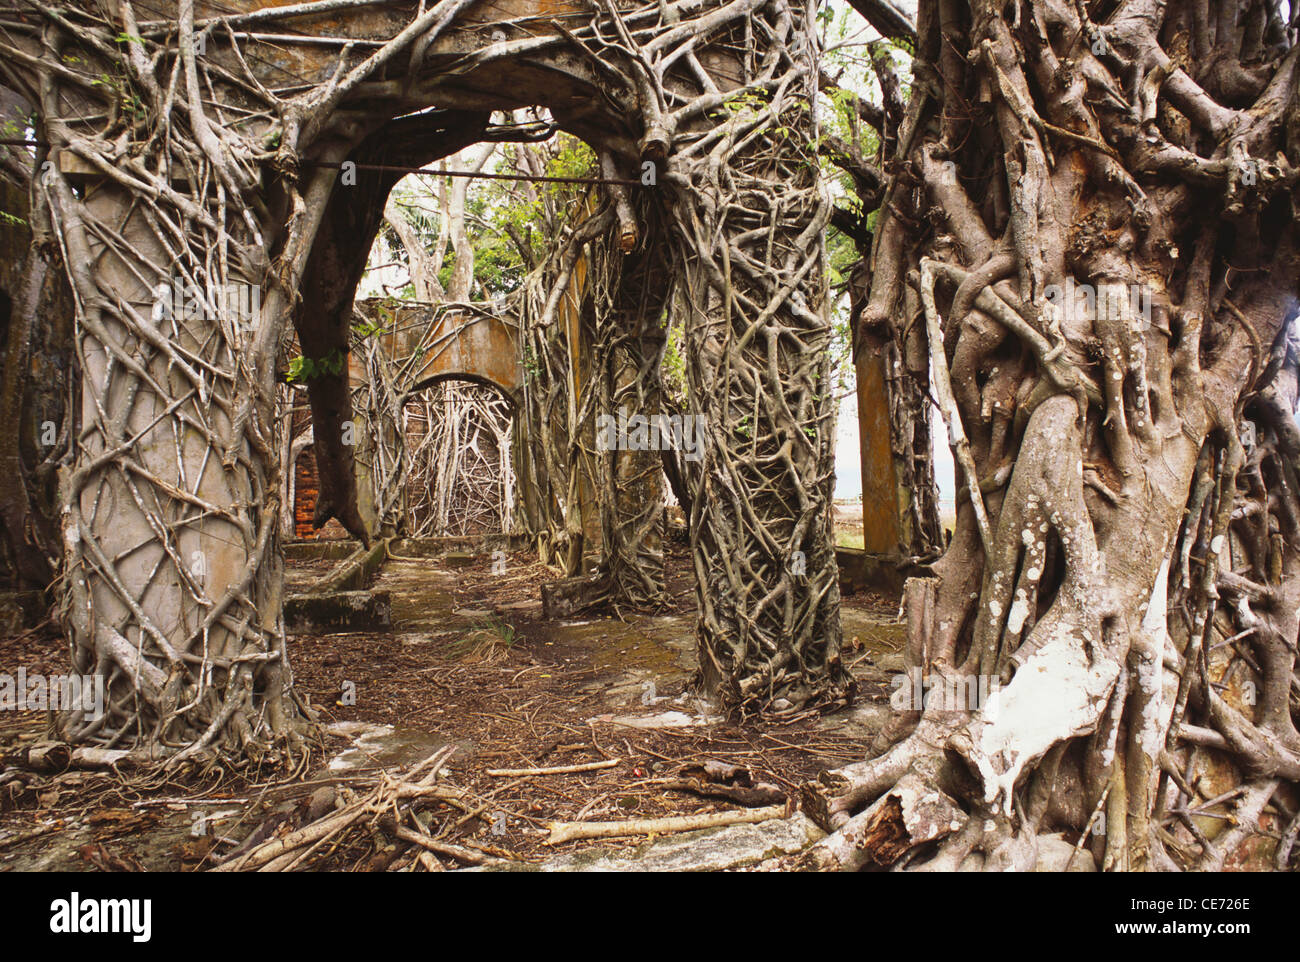 Ruines abandonnées de l'arbre de l'île Ross ; Netaji Shubash Chandra Bose Dweep ; Iles Andaman et Nicobar ; Inde ; Asie Banque D'Images